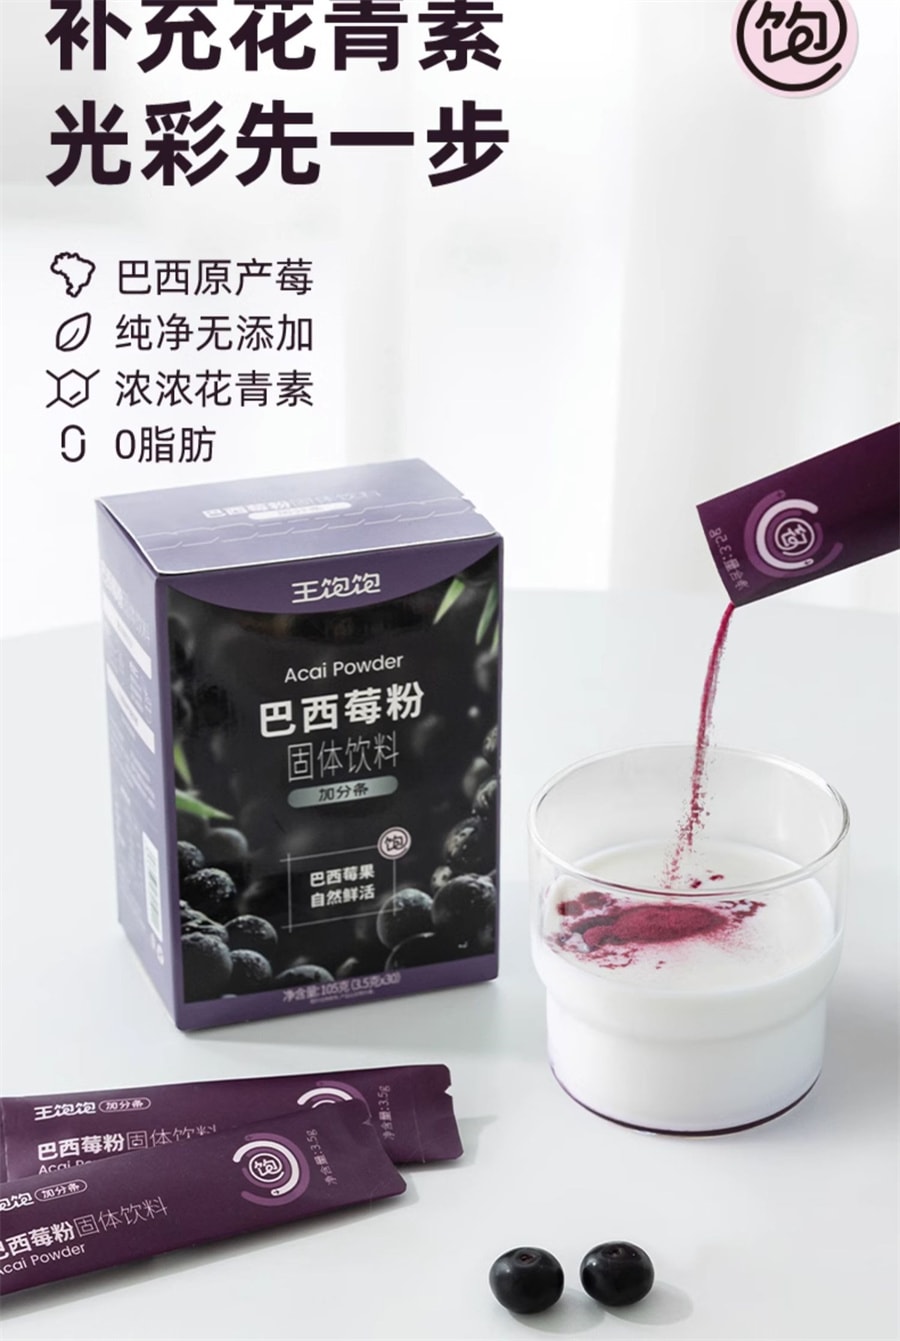 【中國直效郵件】王飽飽 巴西莓粉花青素蔬果纖維粉沖飲品 10條裝/盒